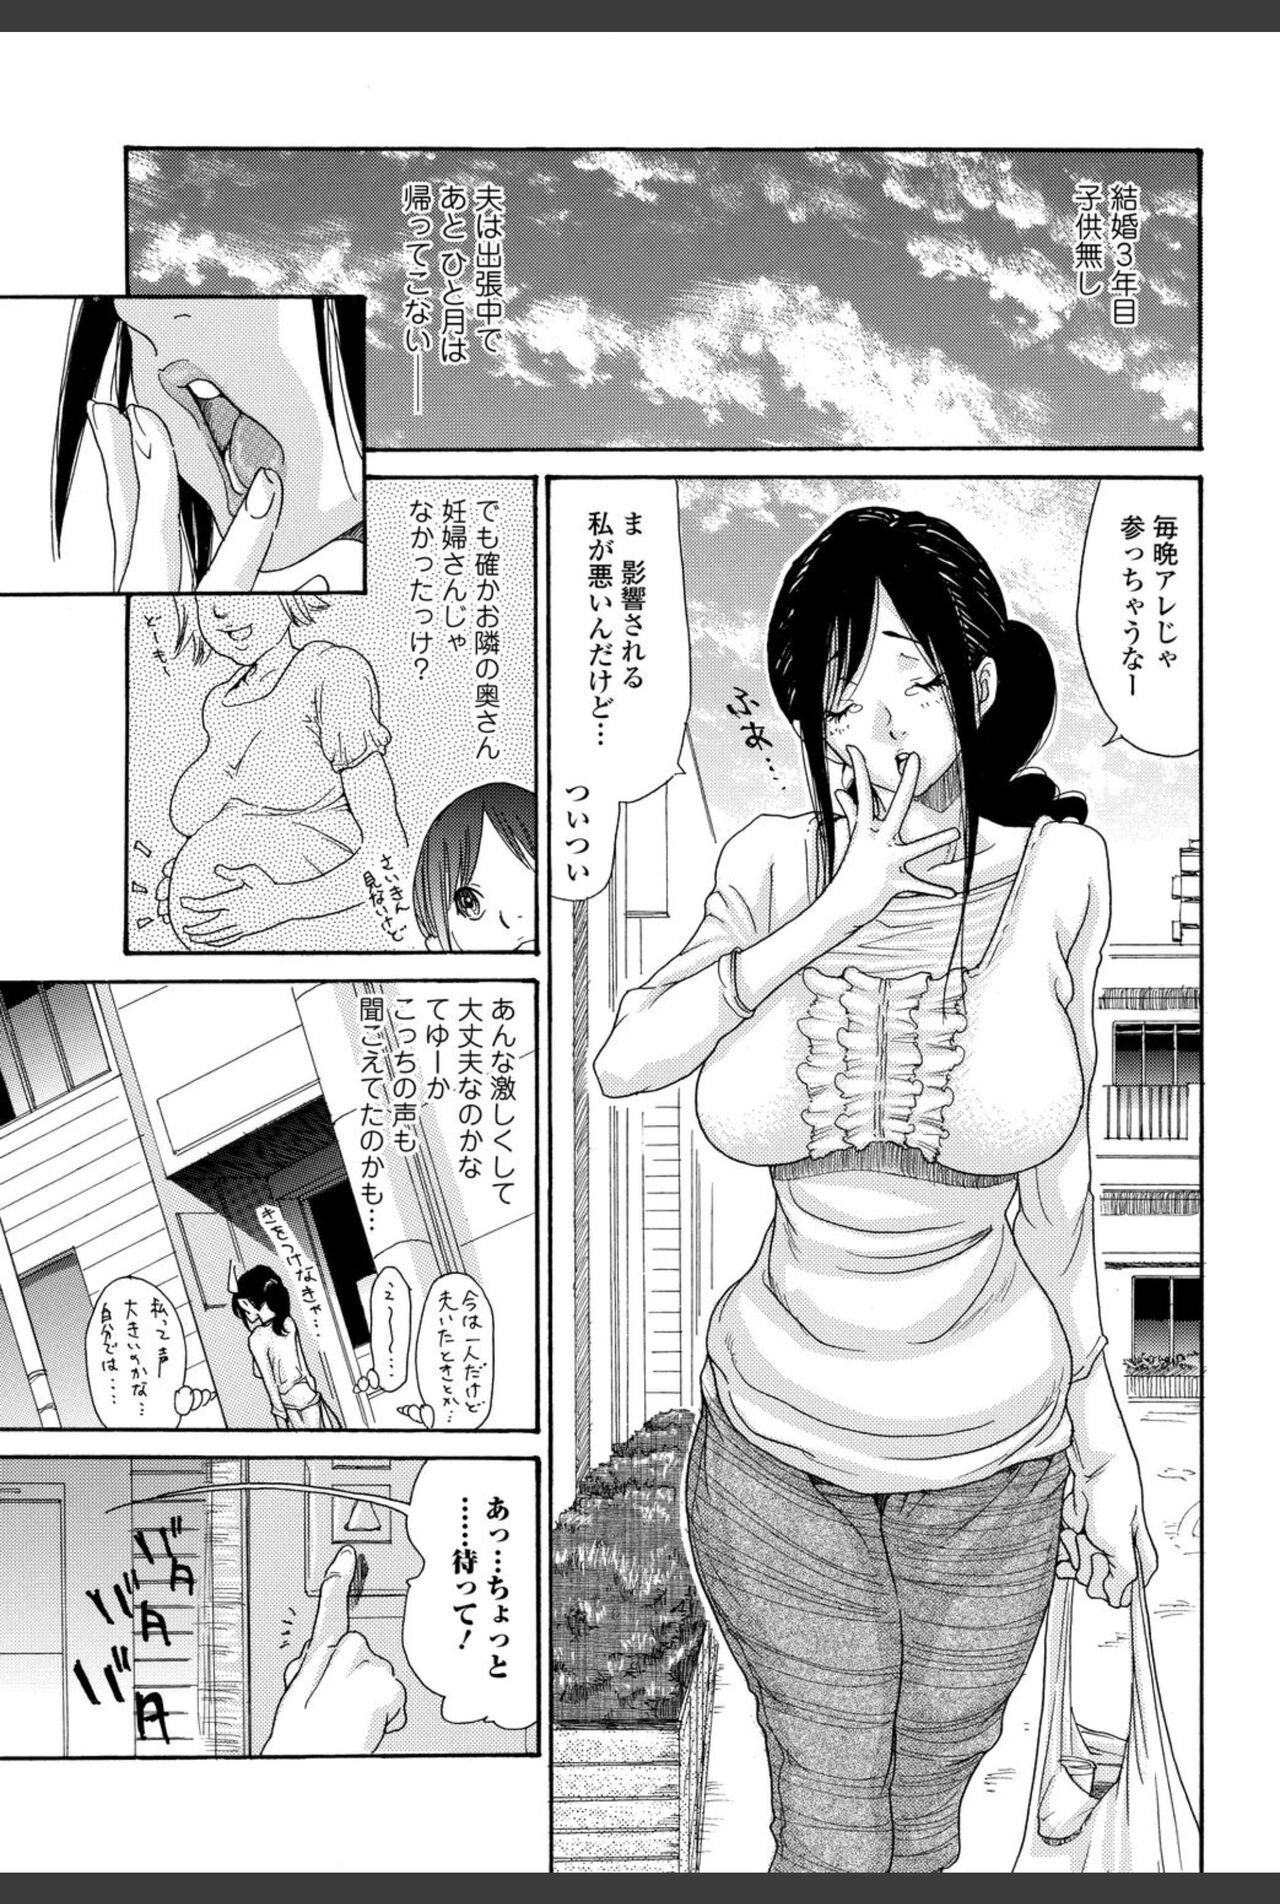 Bishoujo Kakumei KIWAME 2010-12 Vol.11 24